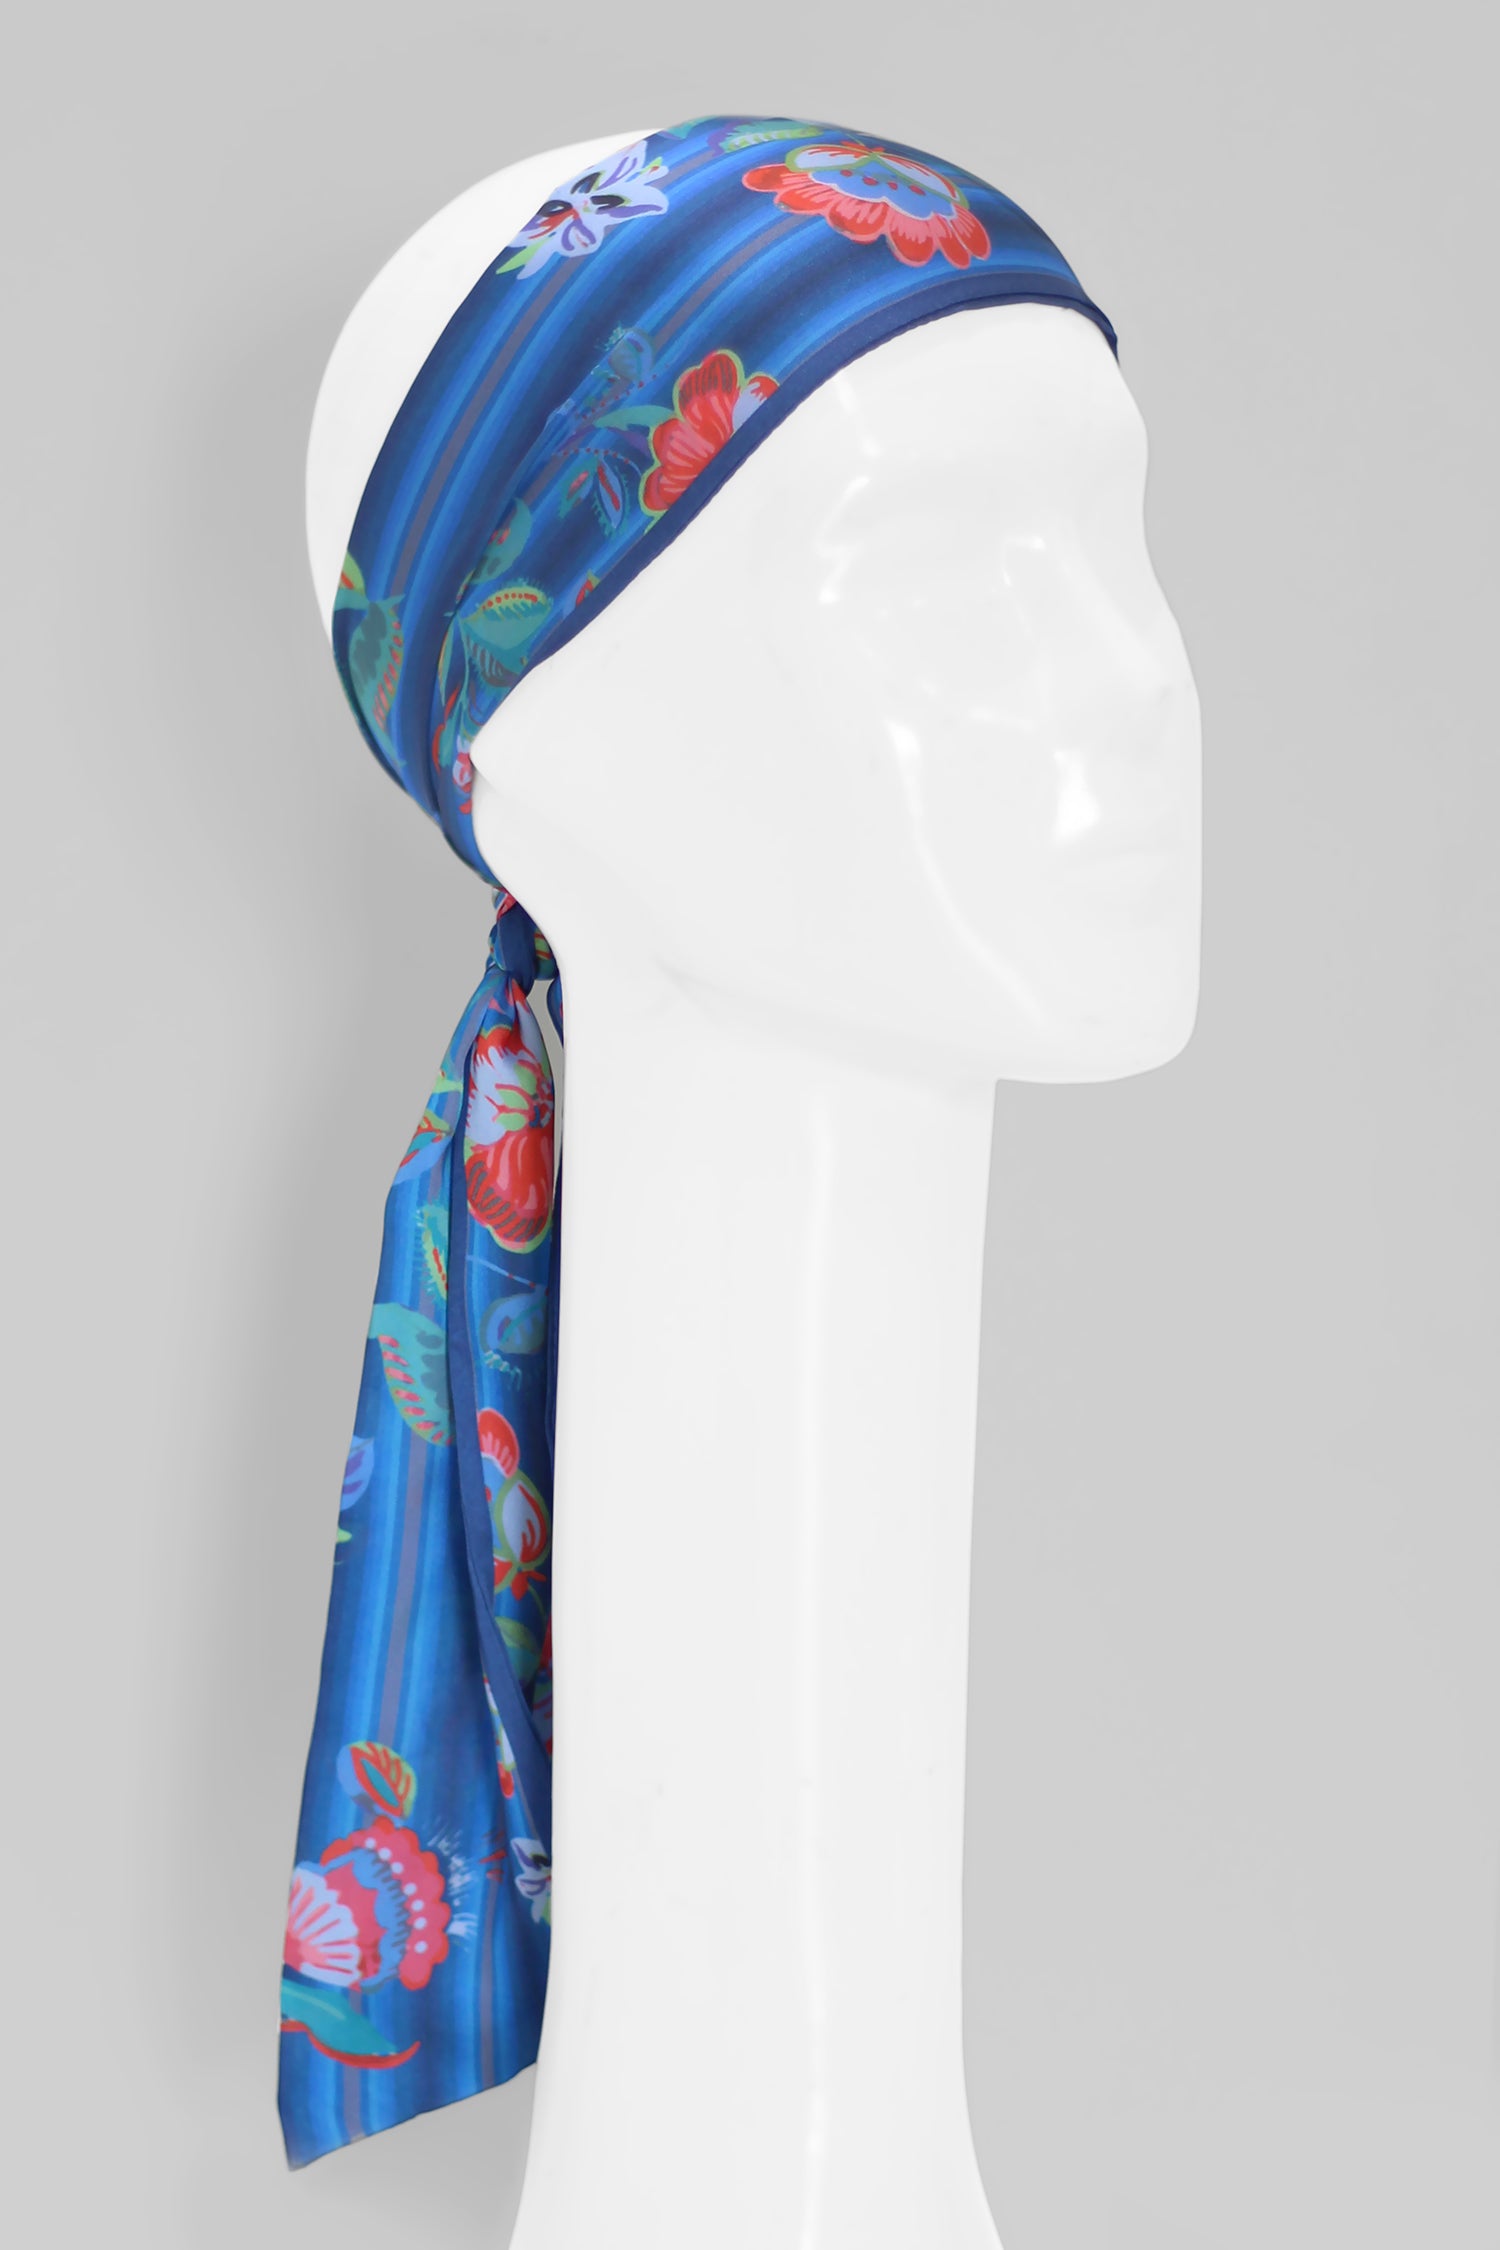 faixa para cabeça, bolsas, cabelo twilly floral aquarela azul em cetim poliéster